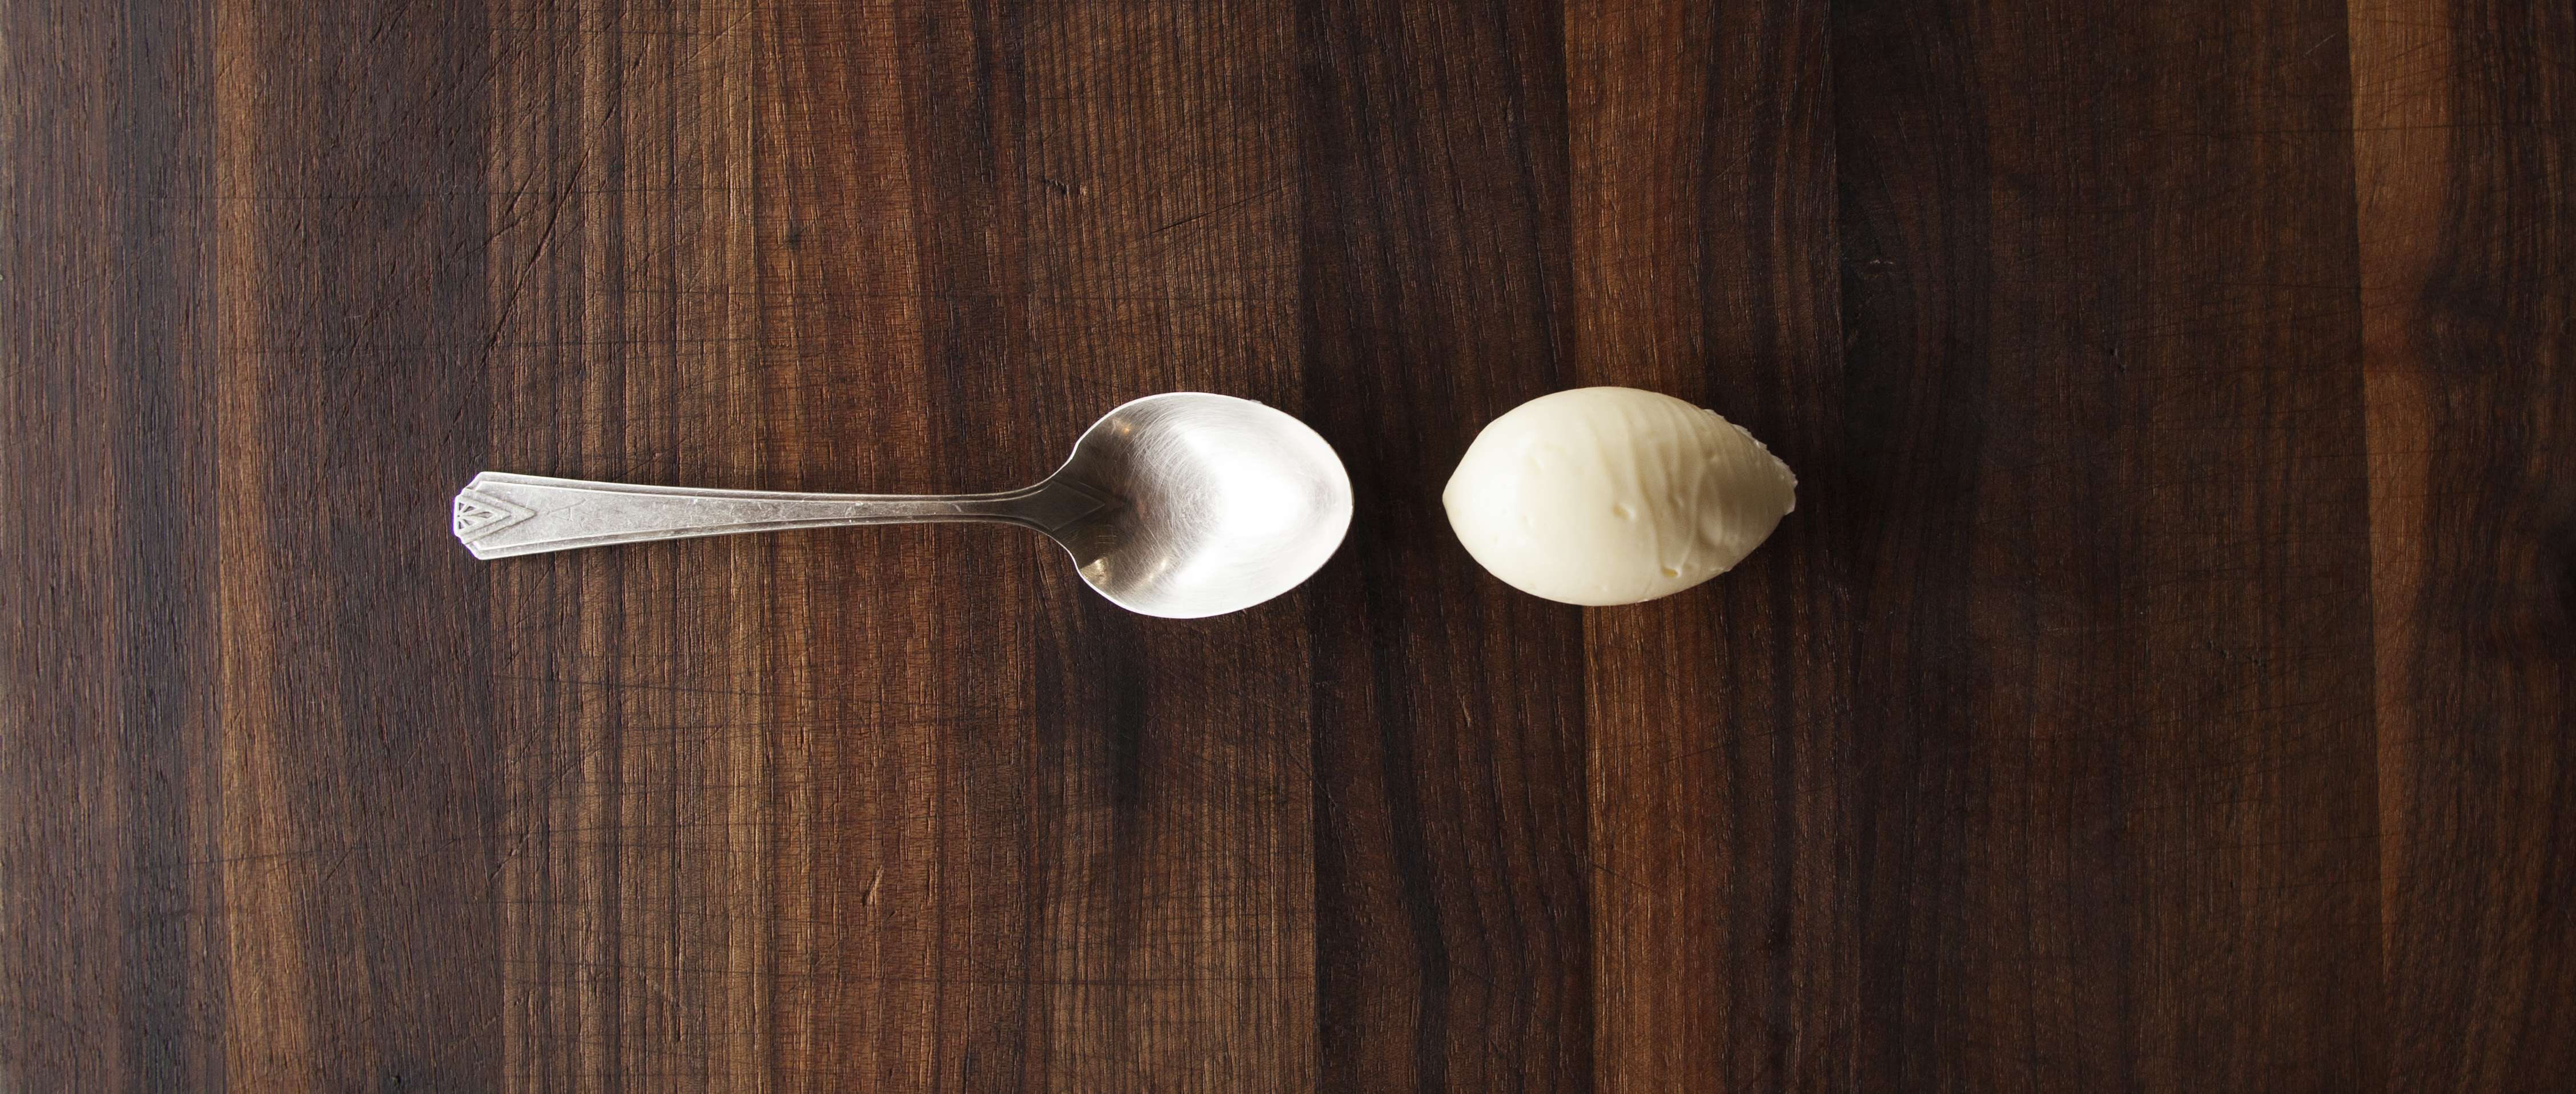 quenelle ice cream scoop